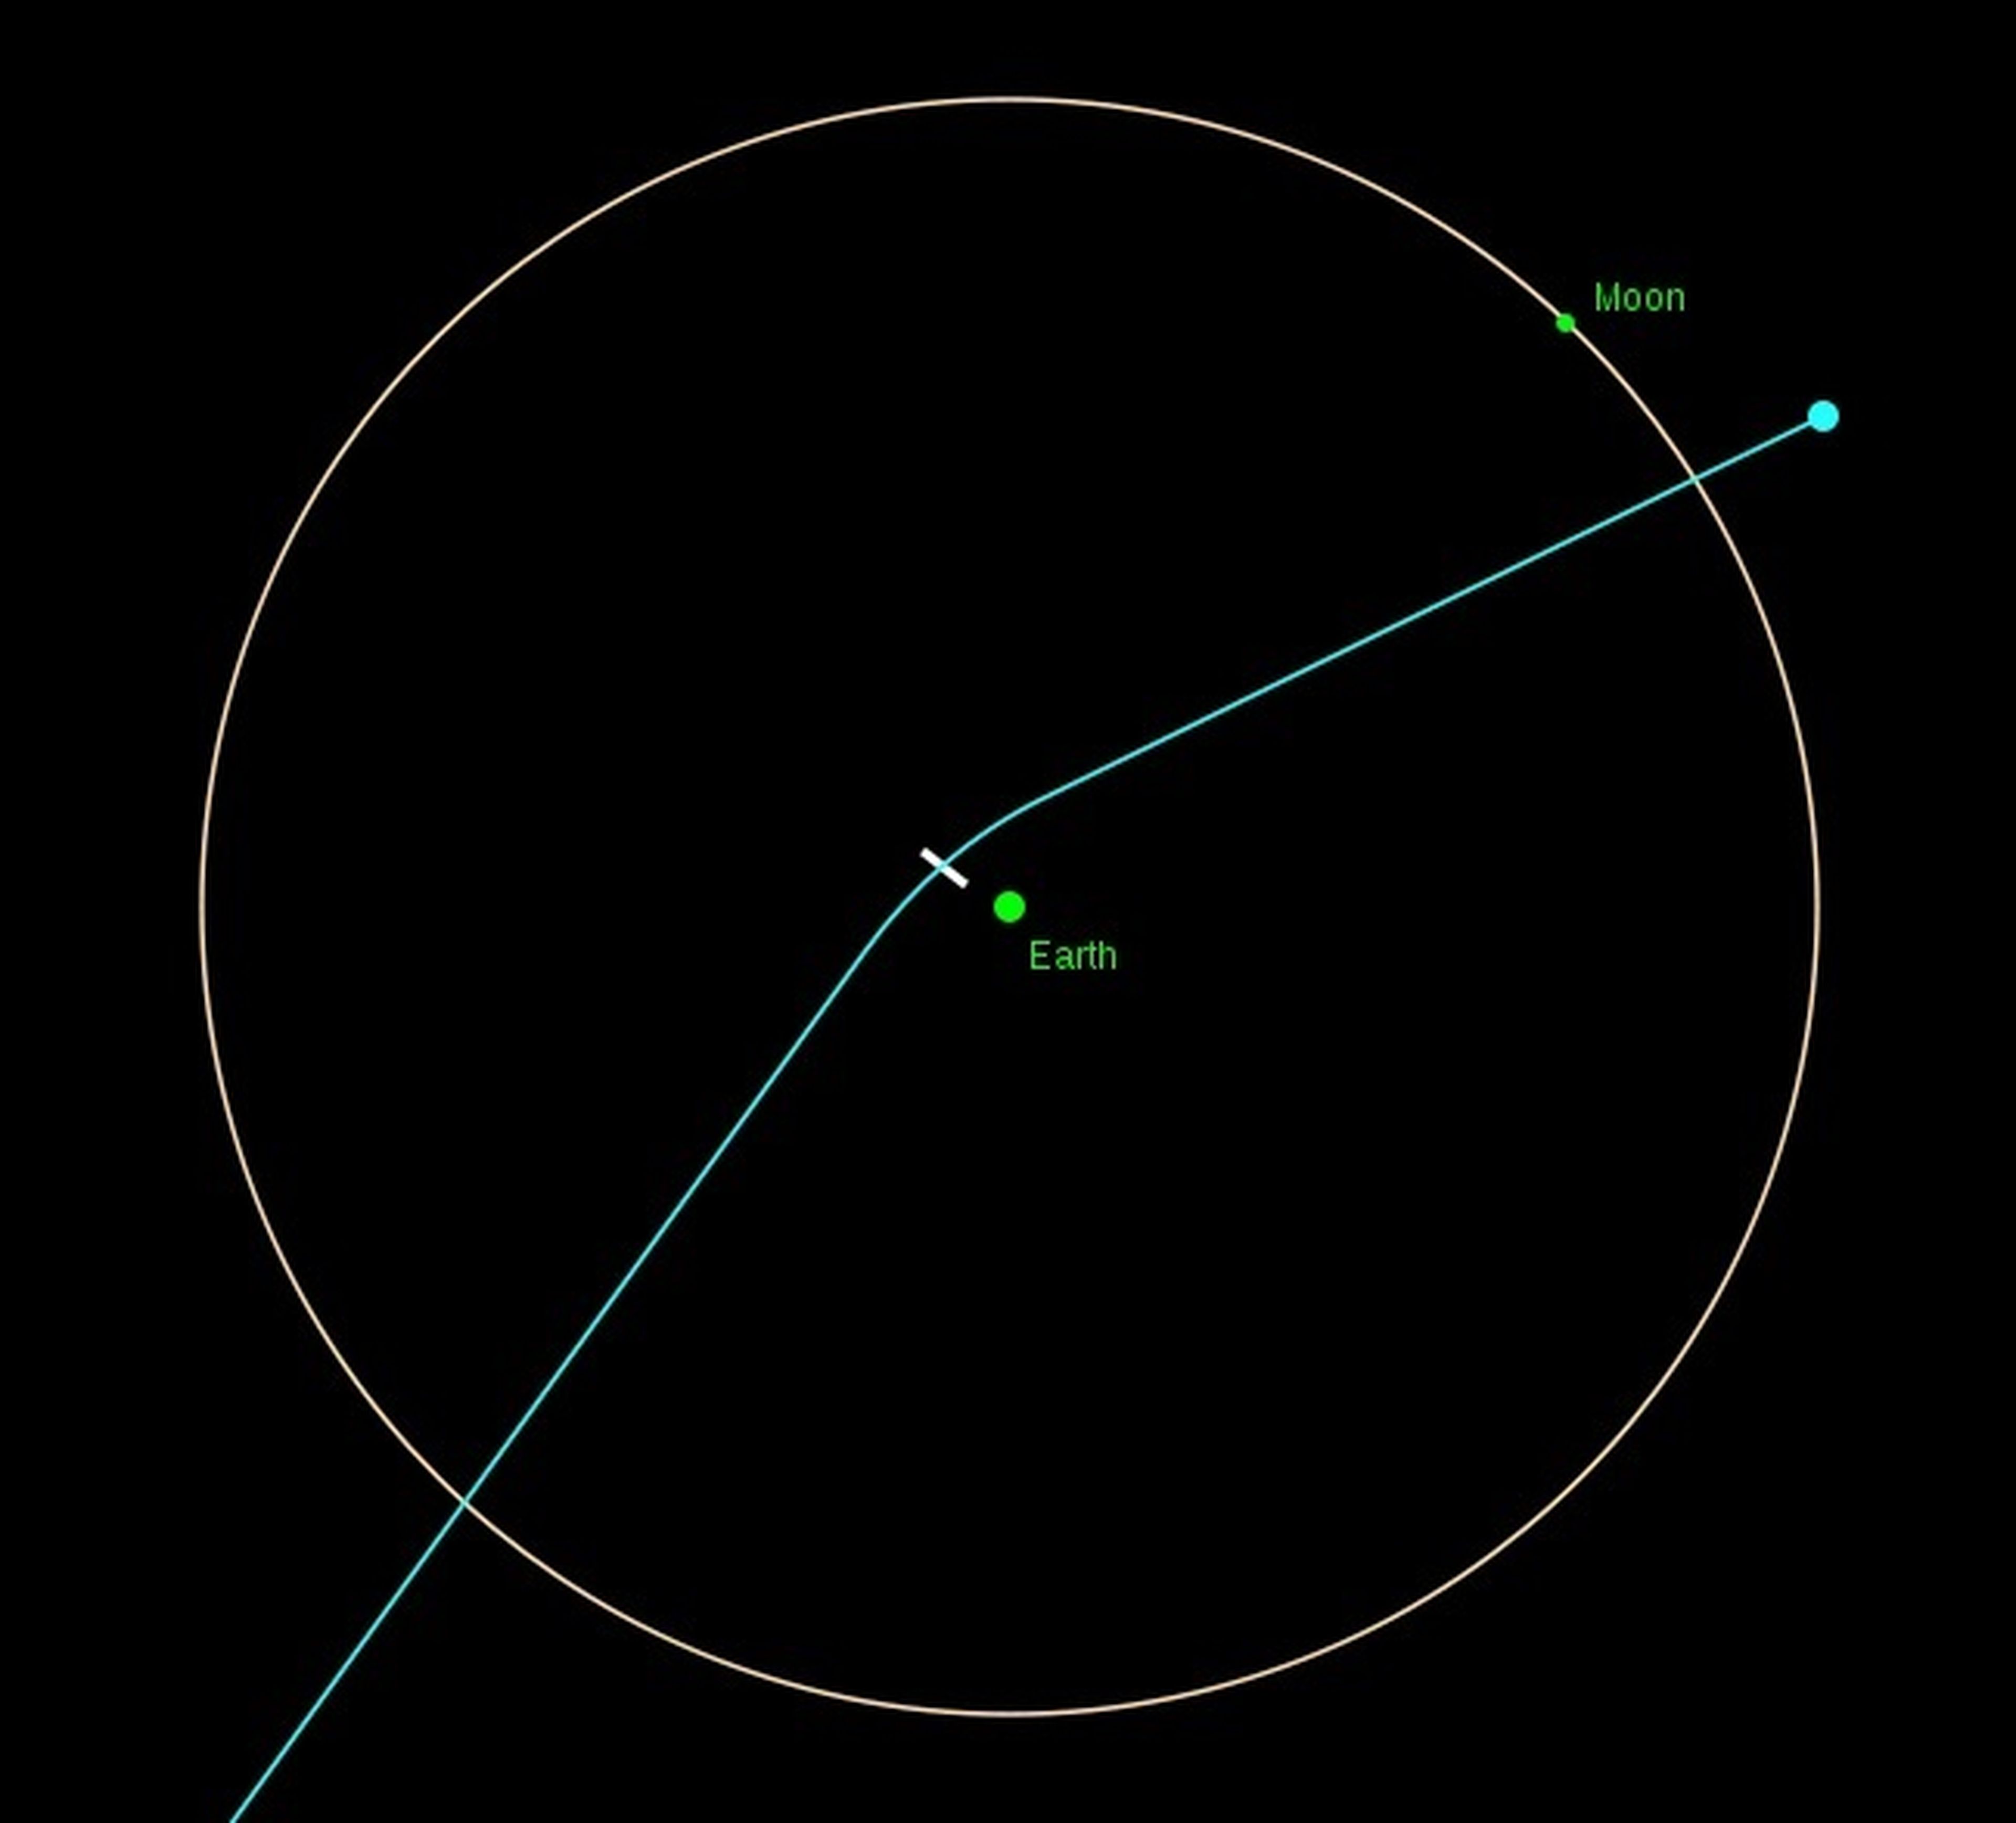 Para 2029, se prevé que la órbita de Apophis cambie, debido al acercamiento a la Tierra y la Luna.